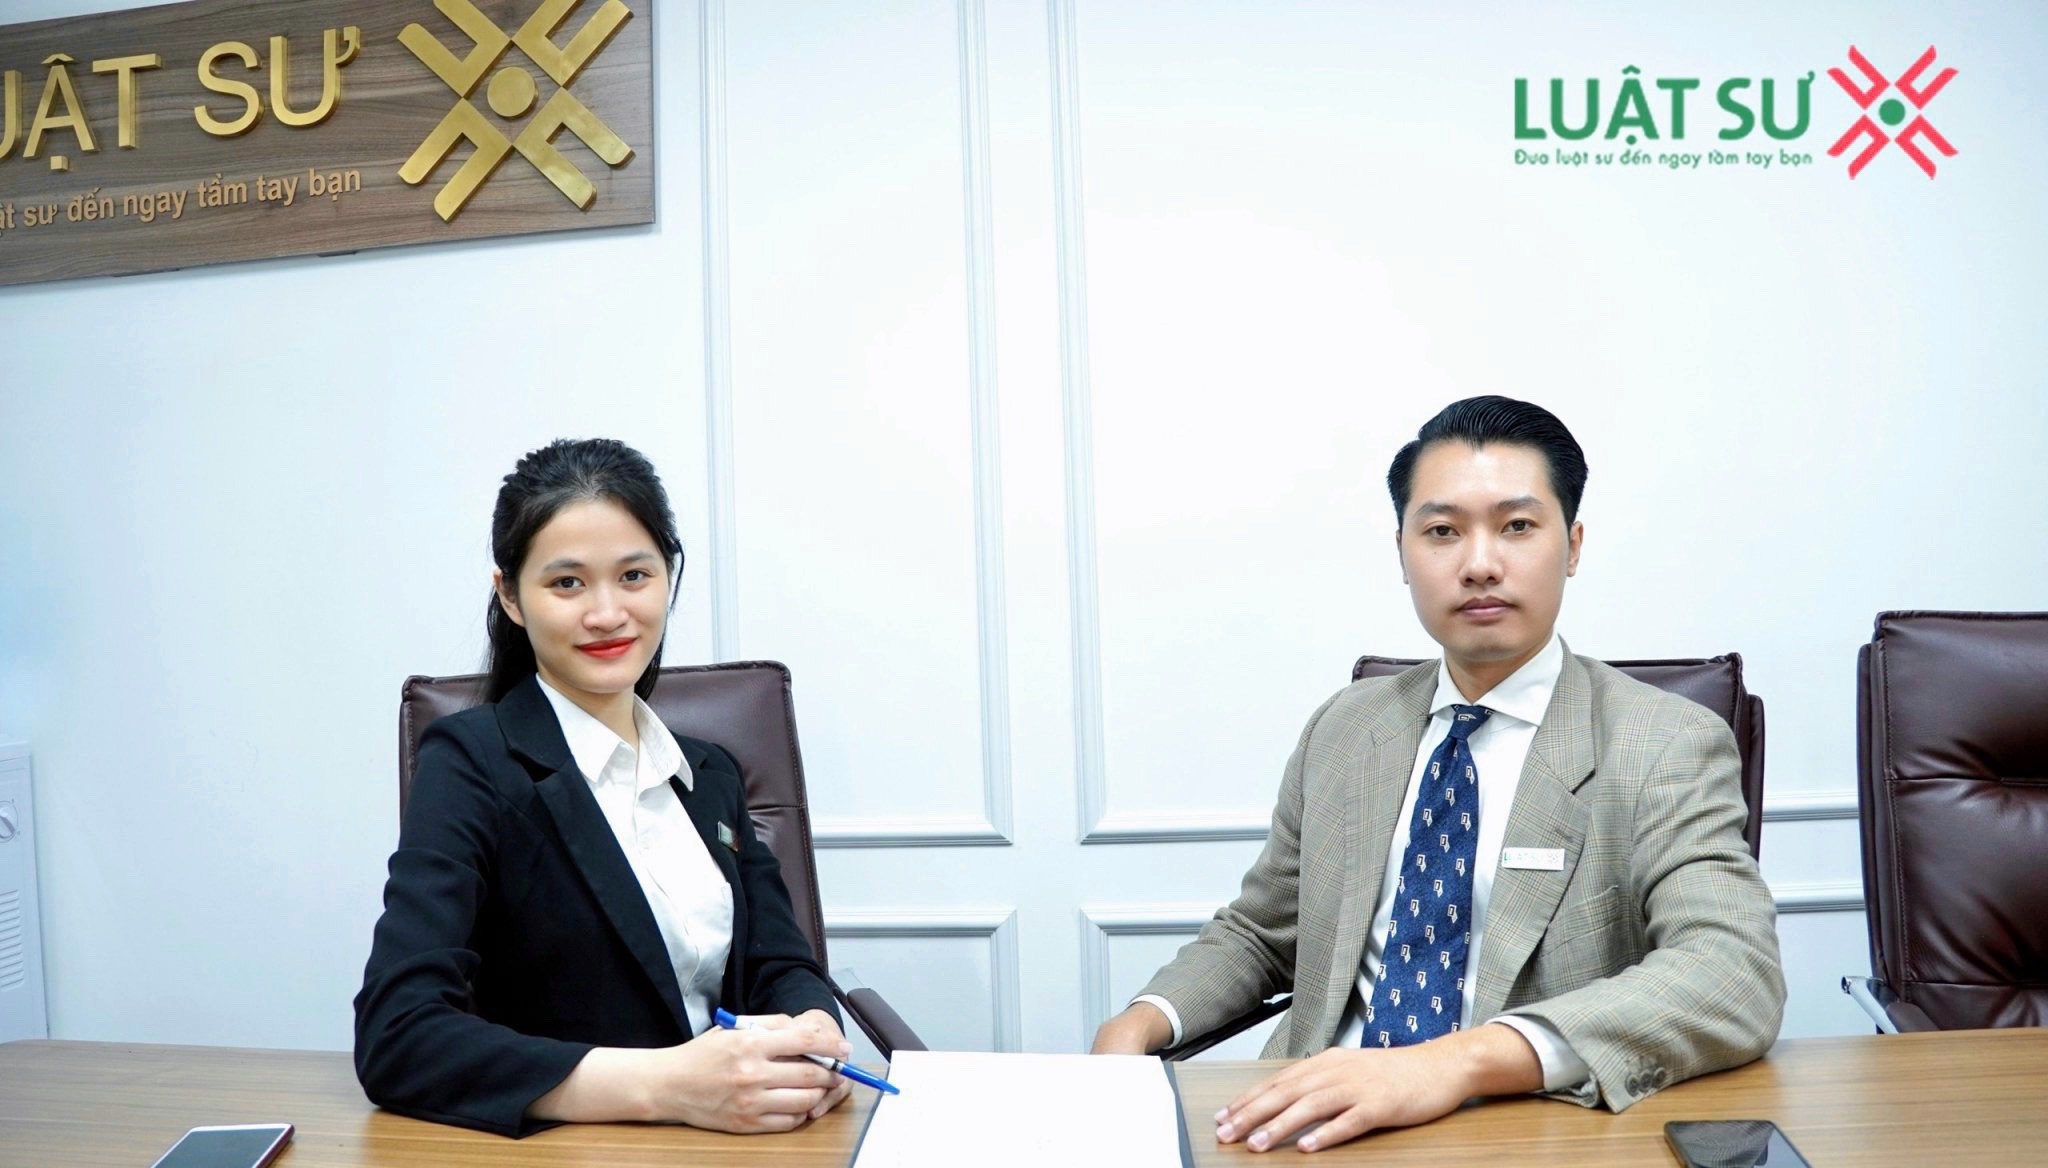 Văn phòng luật sư, công ty luật sư tại tỉnh Lạng Sơn